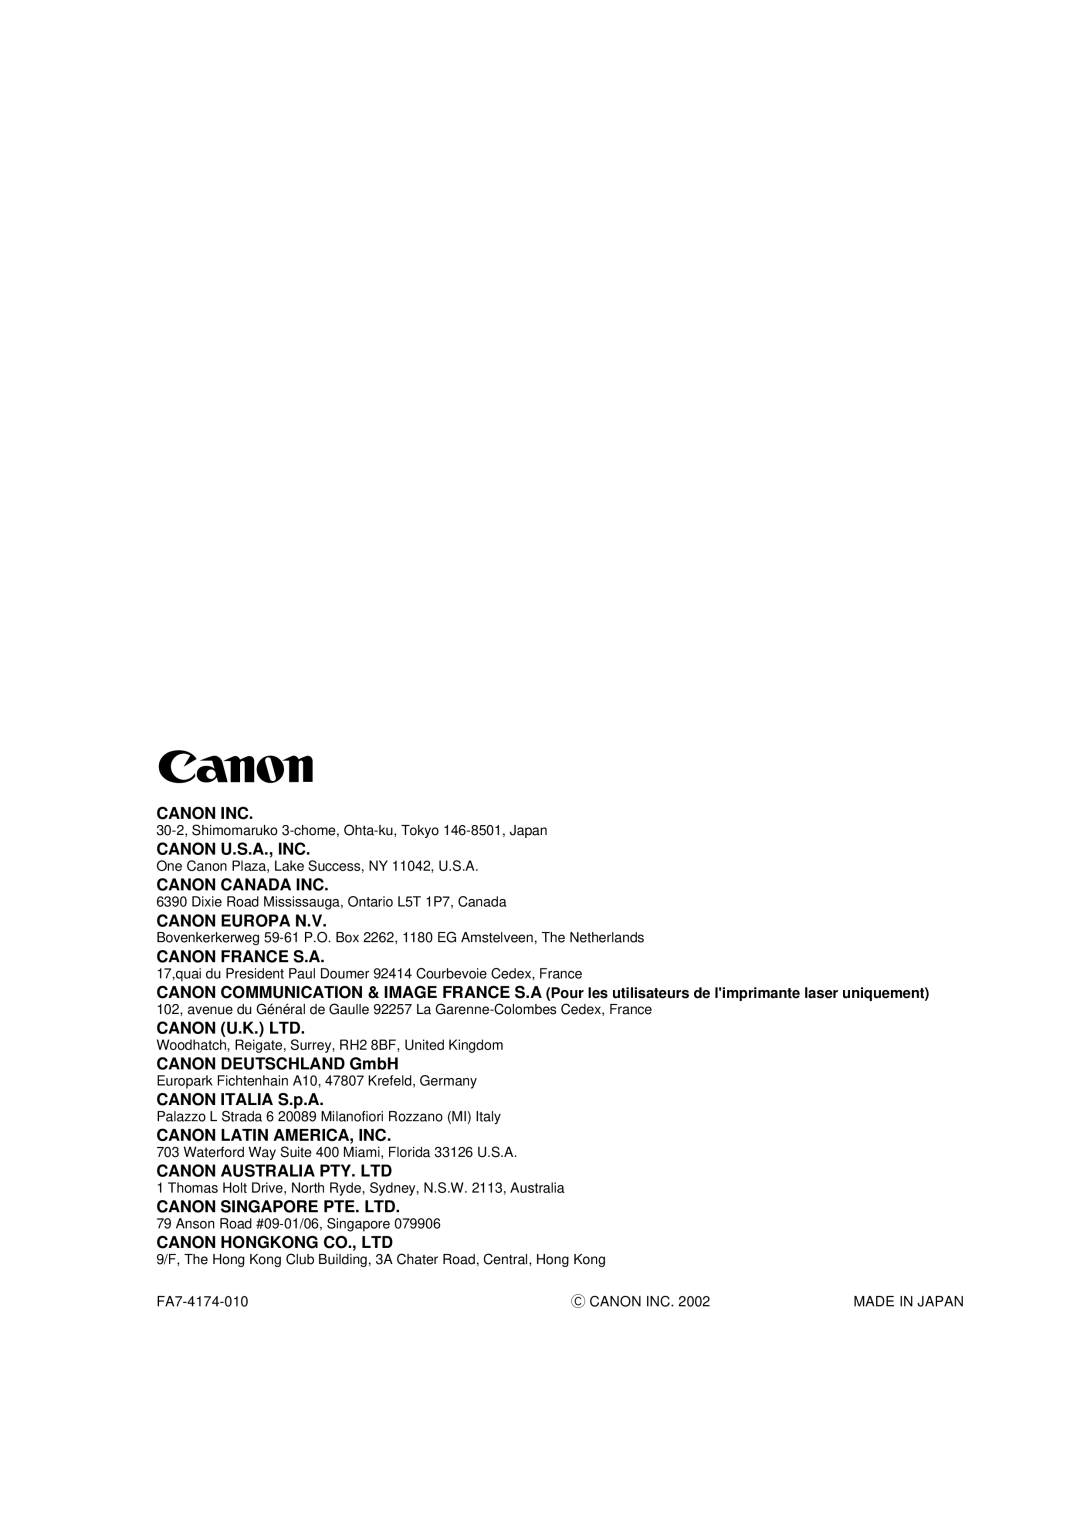 Canon iR Series Canon Inc, Canon U.S.A., Inc, Canon Canada Inc, Canon Europa N.V, Canon France S.A, CANON DEUTSCHLAND GmbH 